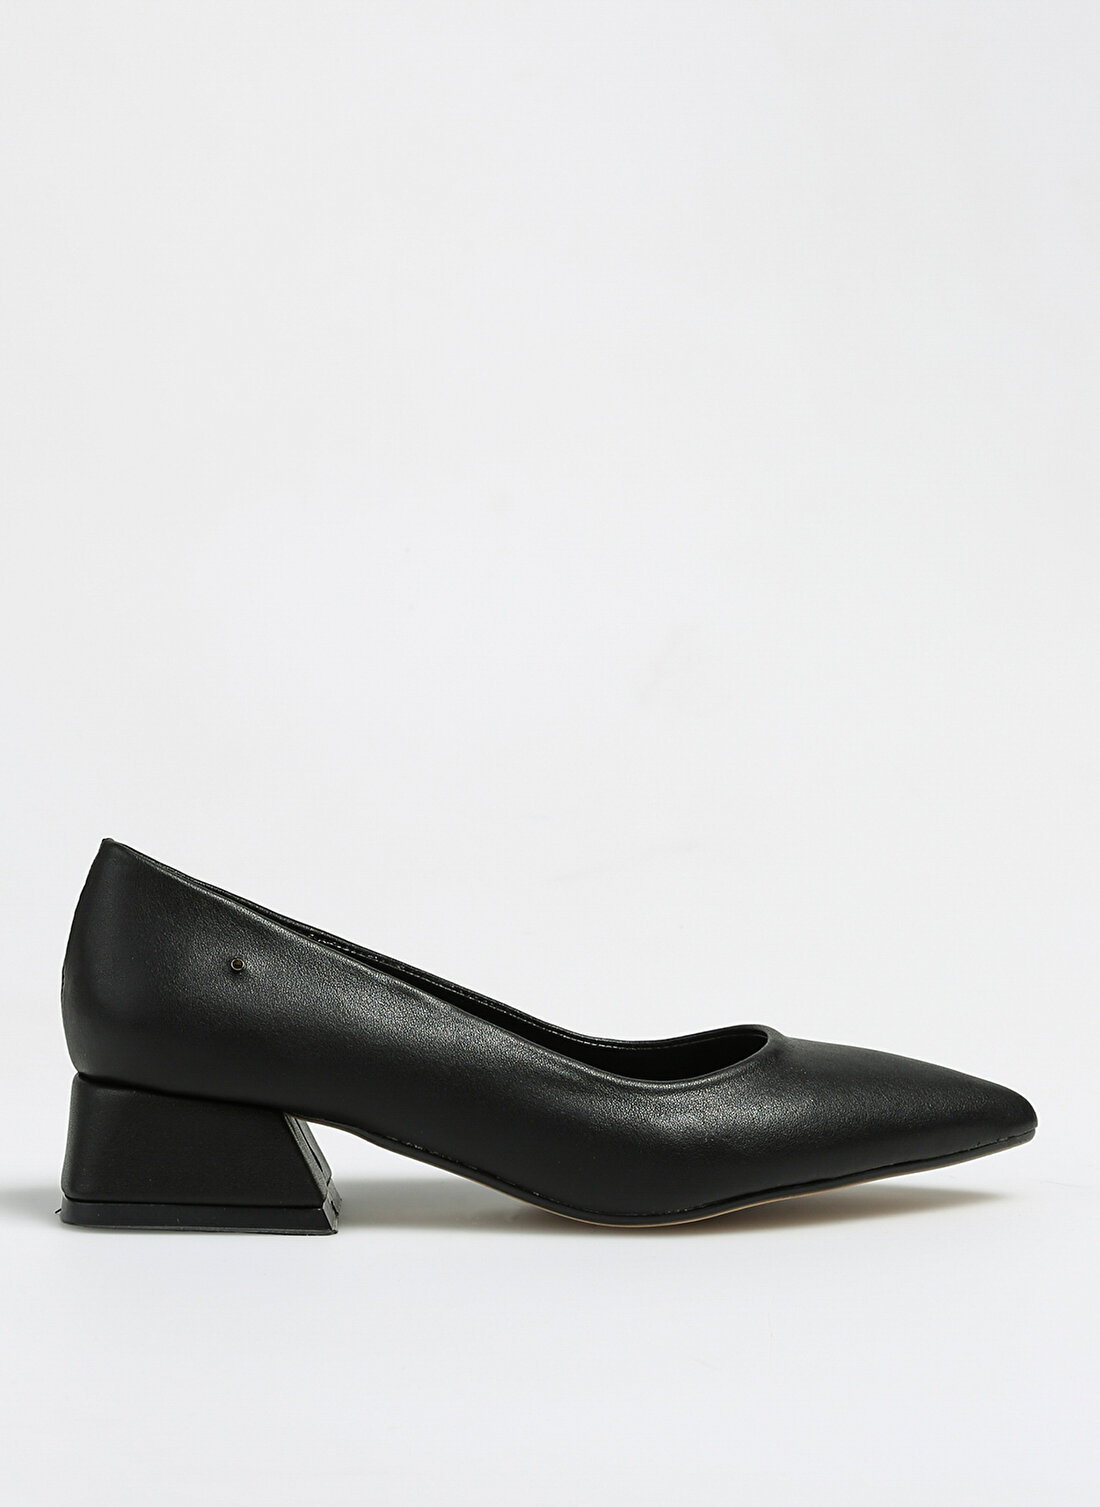 Pierre Cardin Siyah Kadın Topuklu Ayakkabı PC-52009 